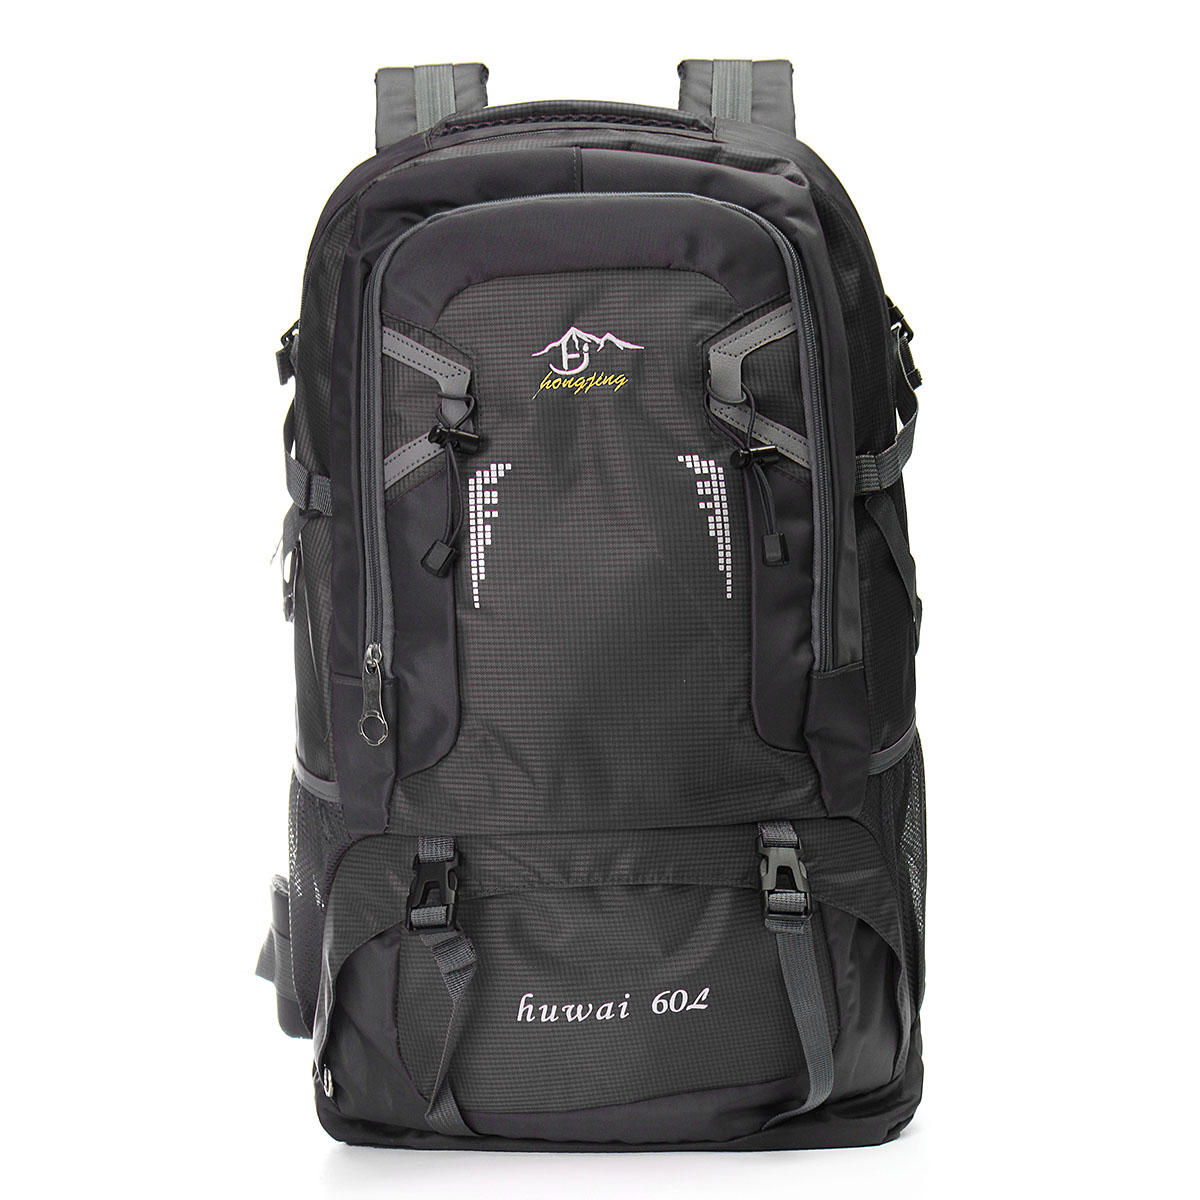 IPRee ™ 60L plecak wspinaczkowy na ramię Camping piesze wycieczki Trekking plecak alpinistyczny